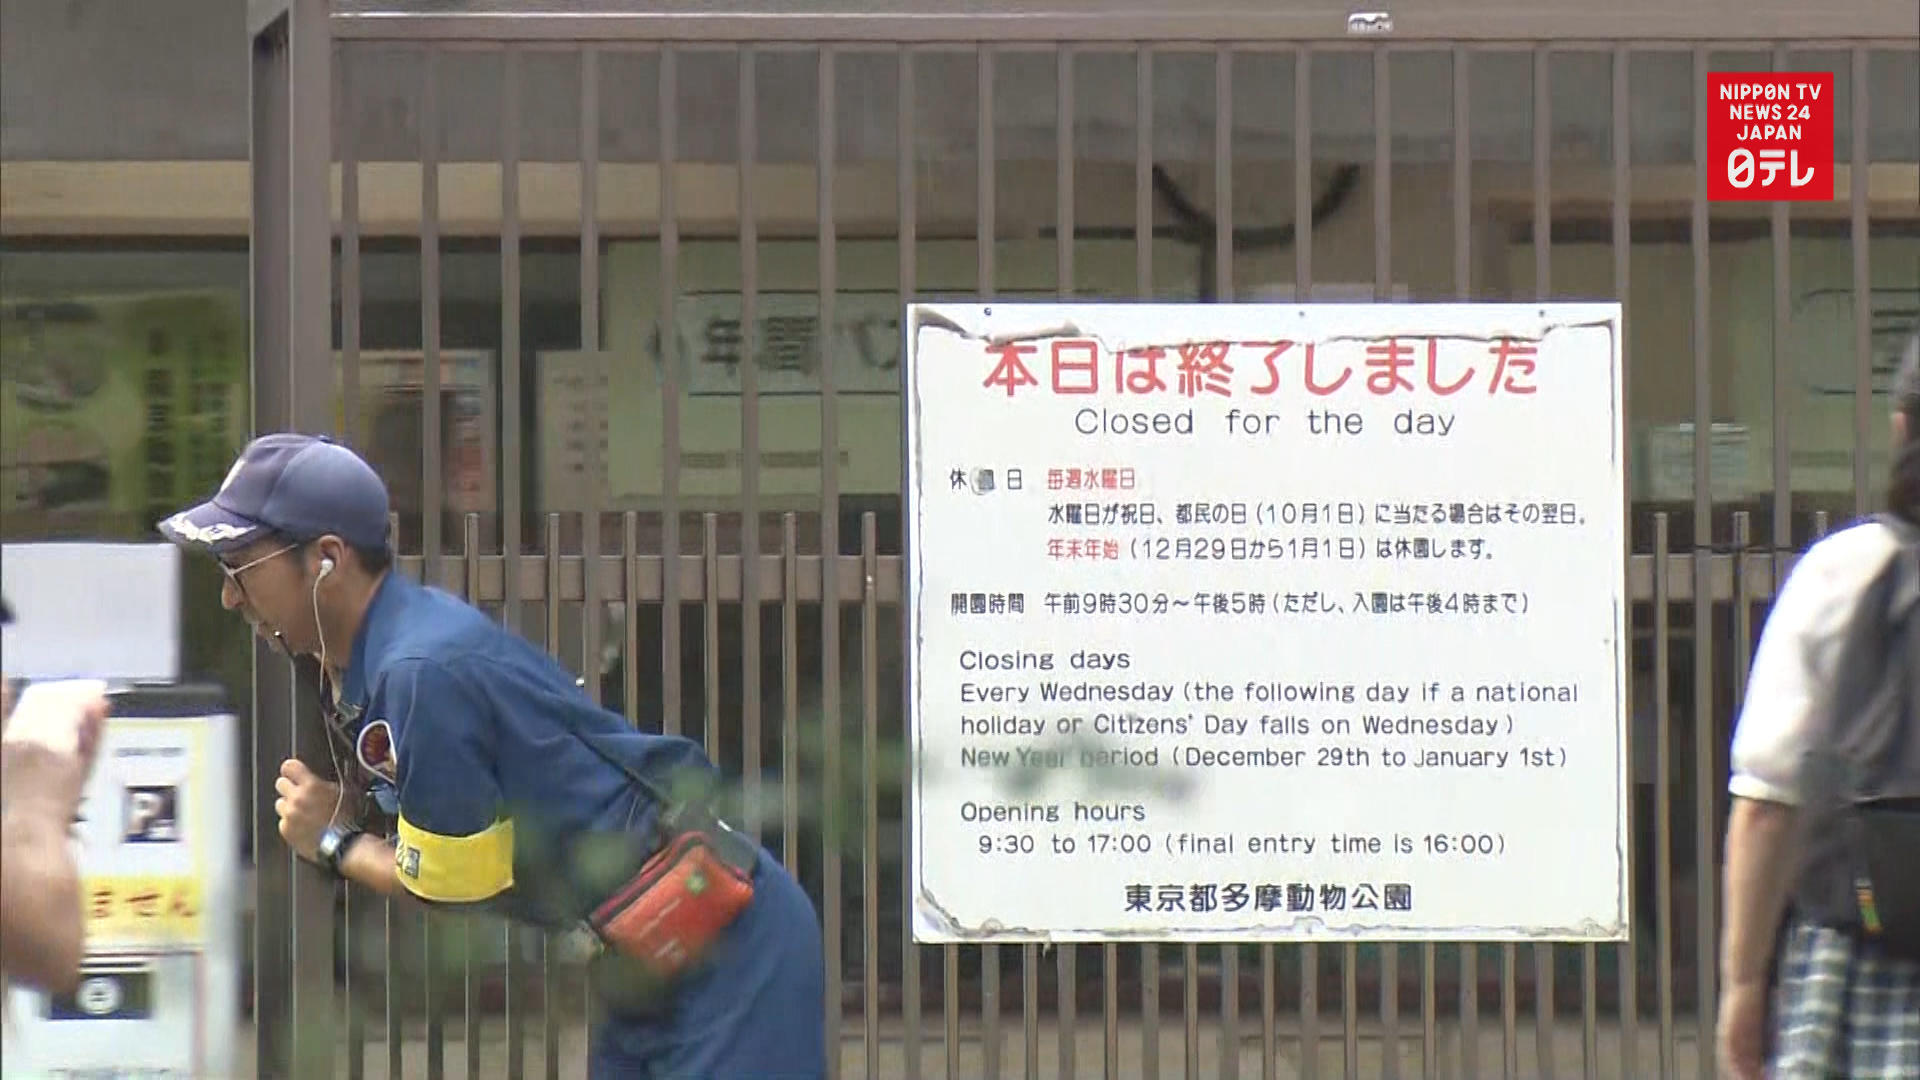 Rhino may have killed caretaker at Tokyo zoo